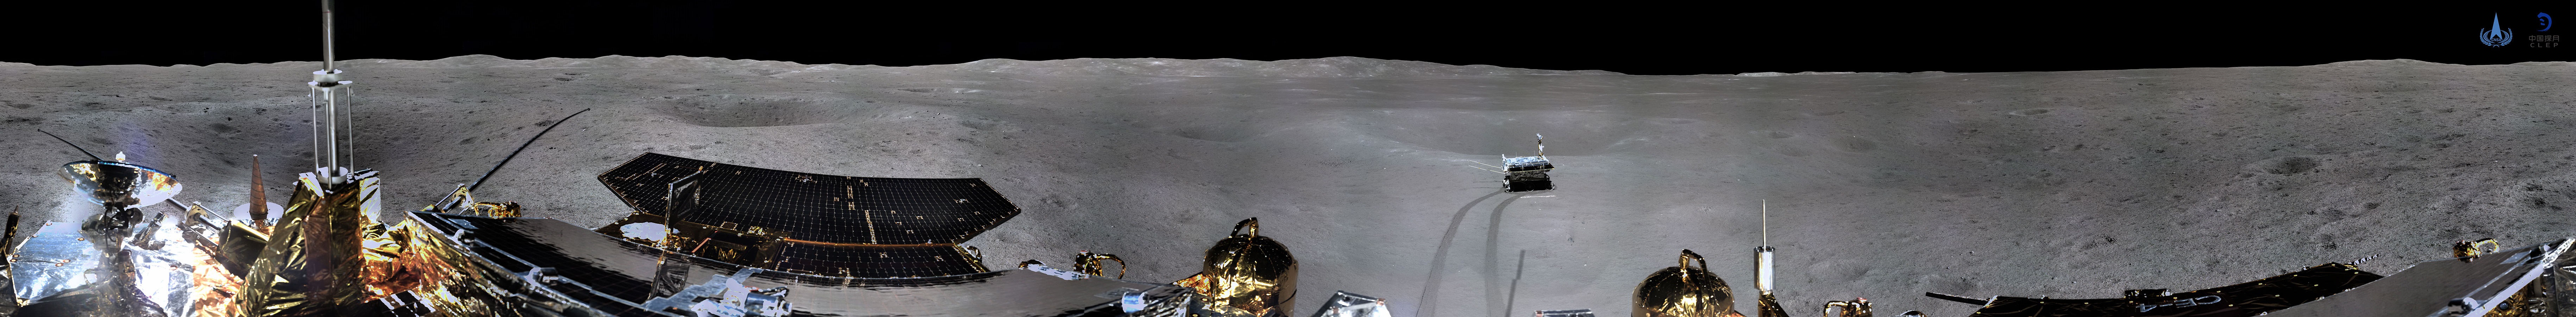 Как выглядит обратная сторона Луны: фото и видео с Chang'e-4